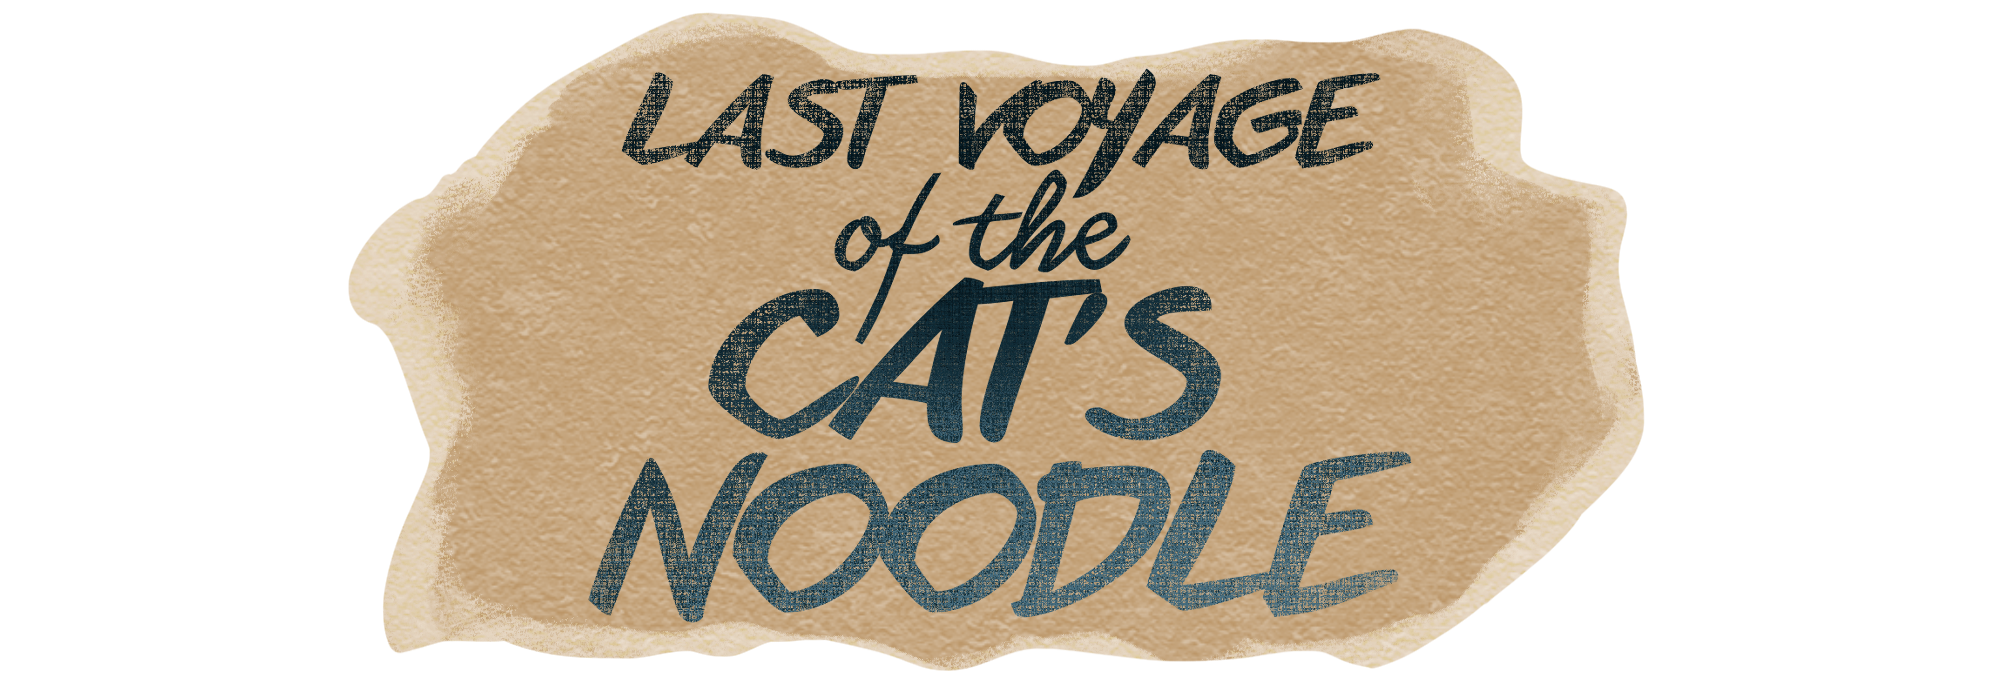 Last Voyage of the Cat's Noodle